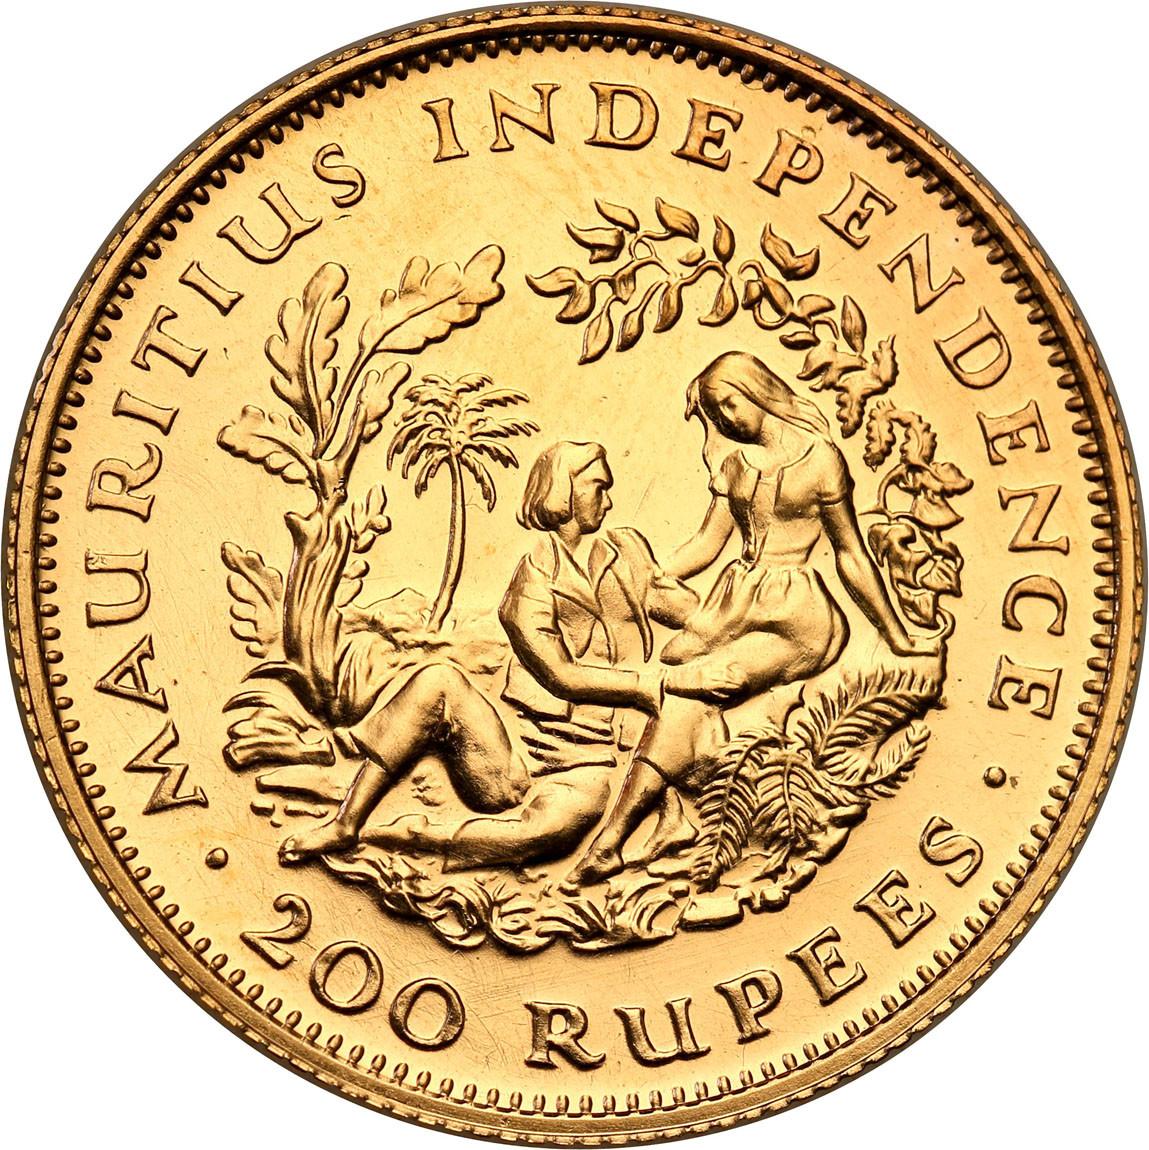 Mauritius. Elizabeth II. 200 rupees, 1971 st.1-